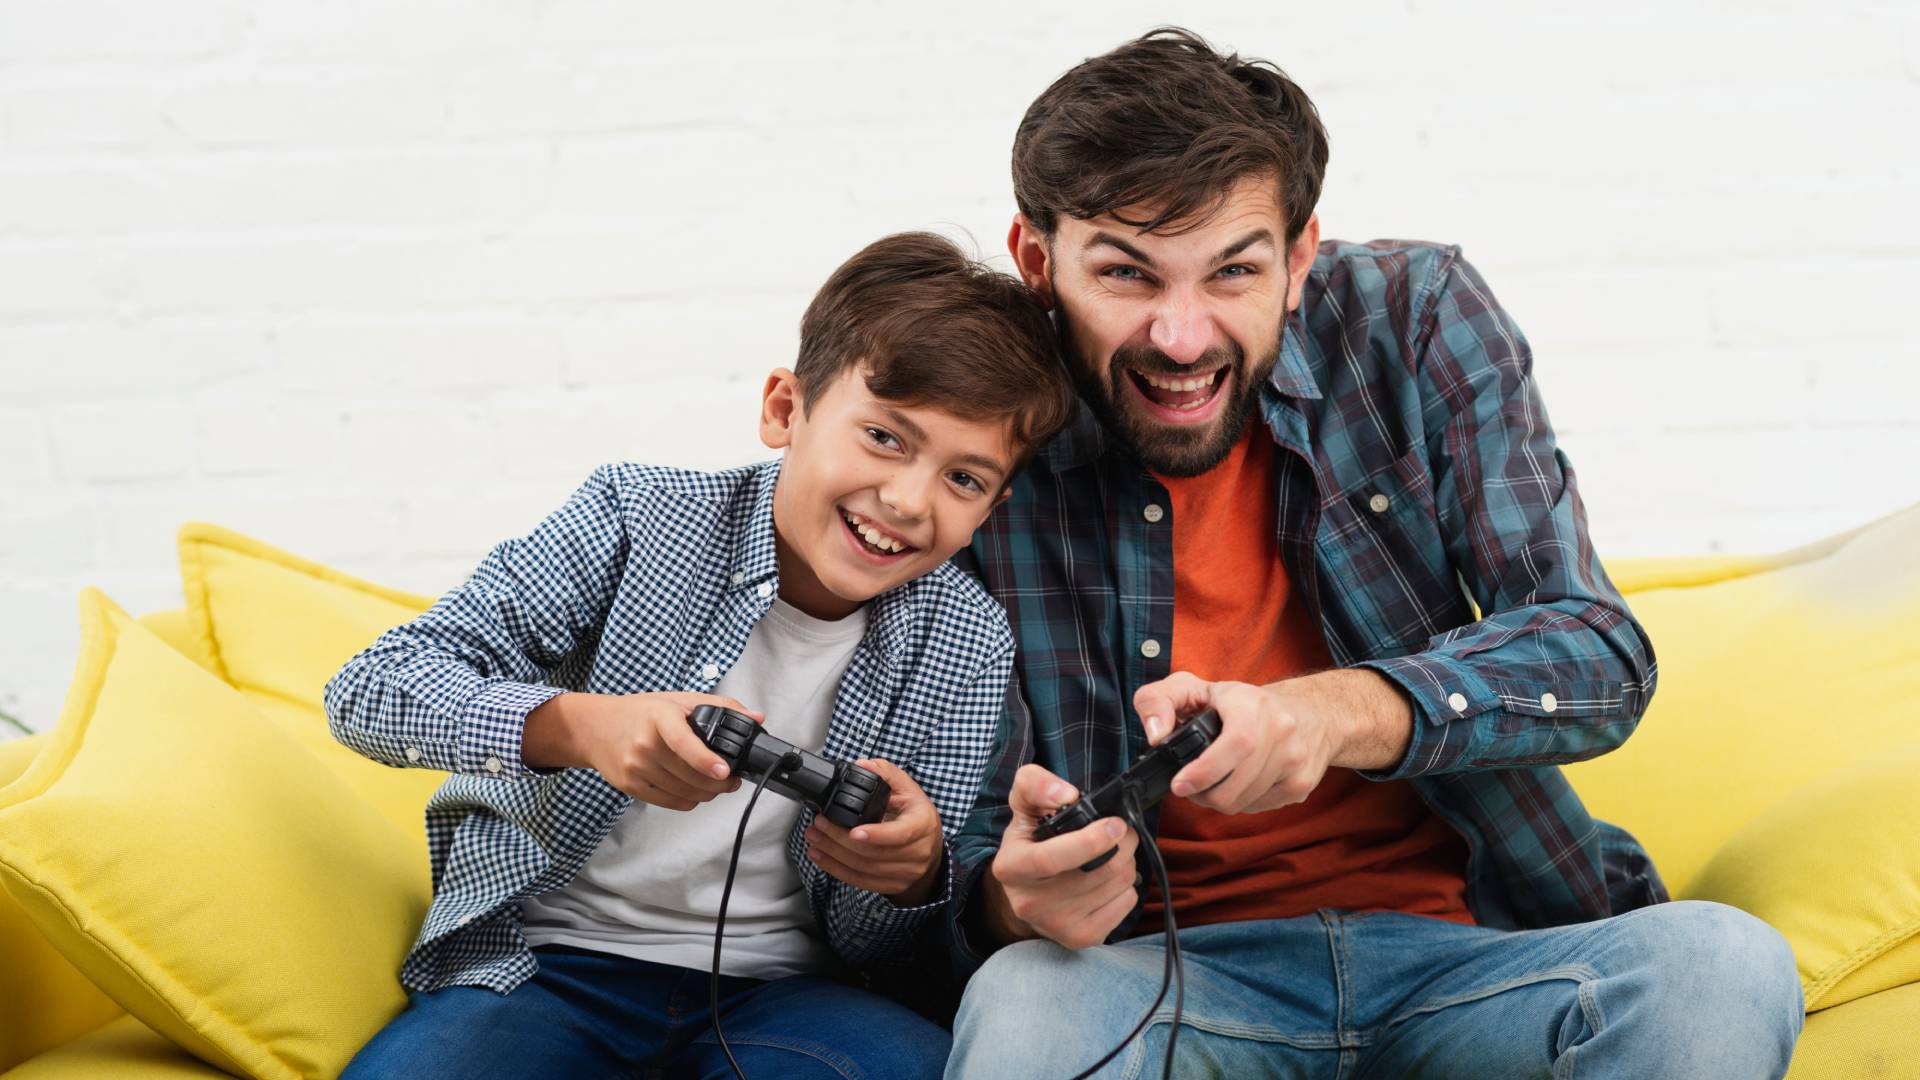 Cinco habilidades que aprenden los niños jugando videojuegos